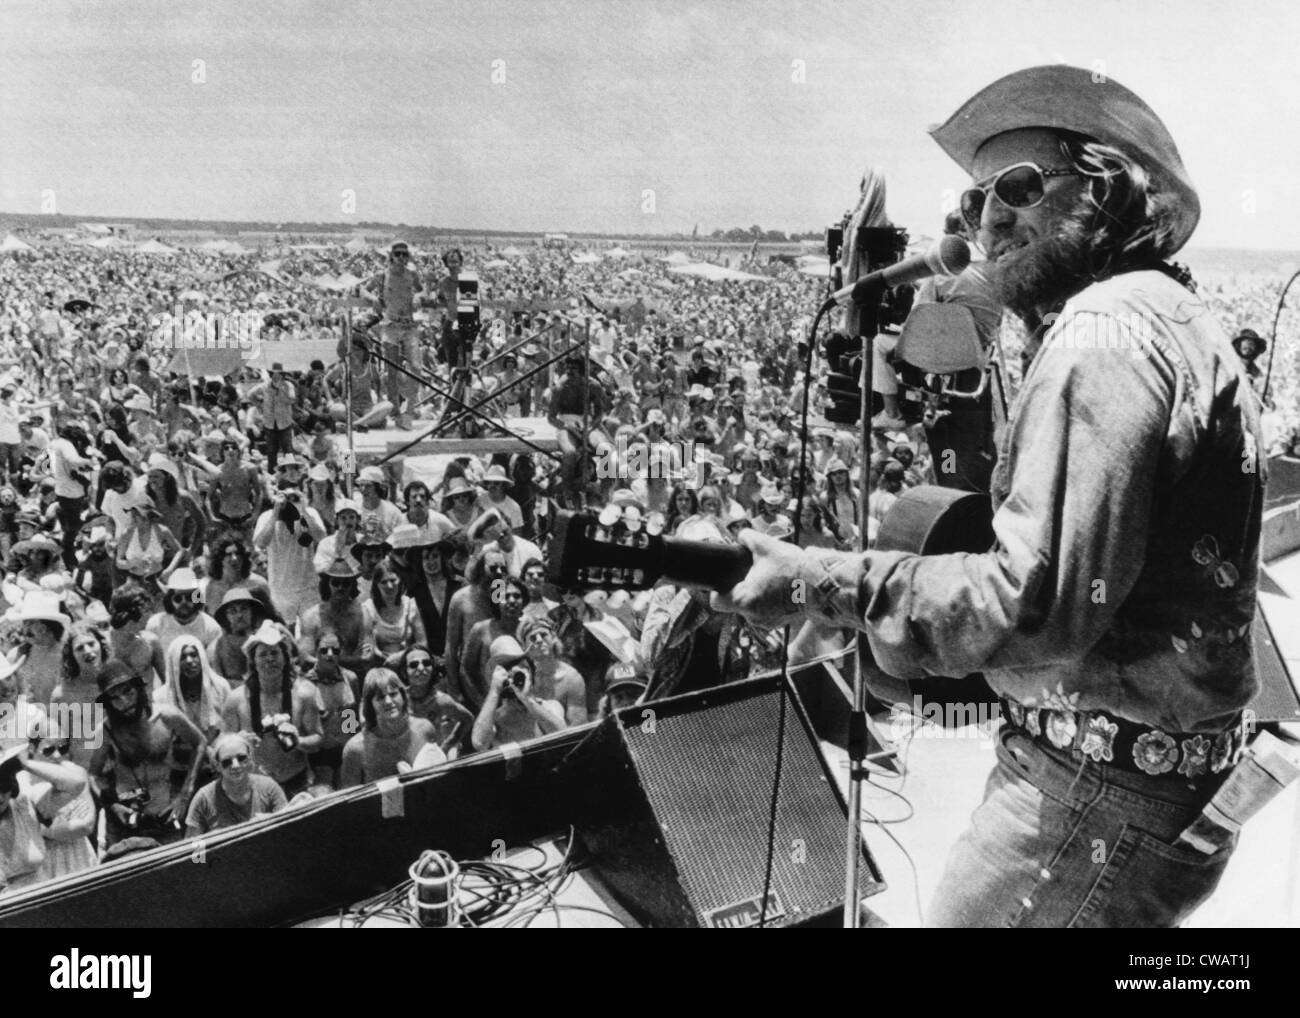 Country rock singer Willie Nelson de l'ouverture du 'Pique-nique' 4 Juillet Fête de la musique, 1974.. Avec la permission de la CSU : Archives / Everett Banque D'Images